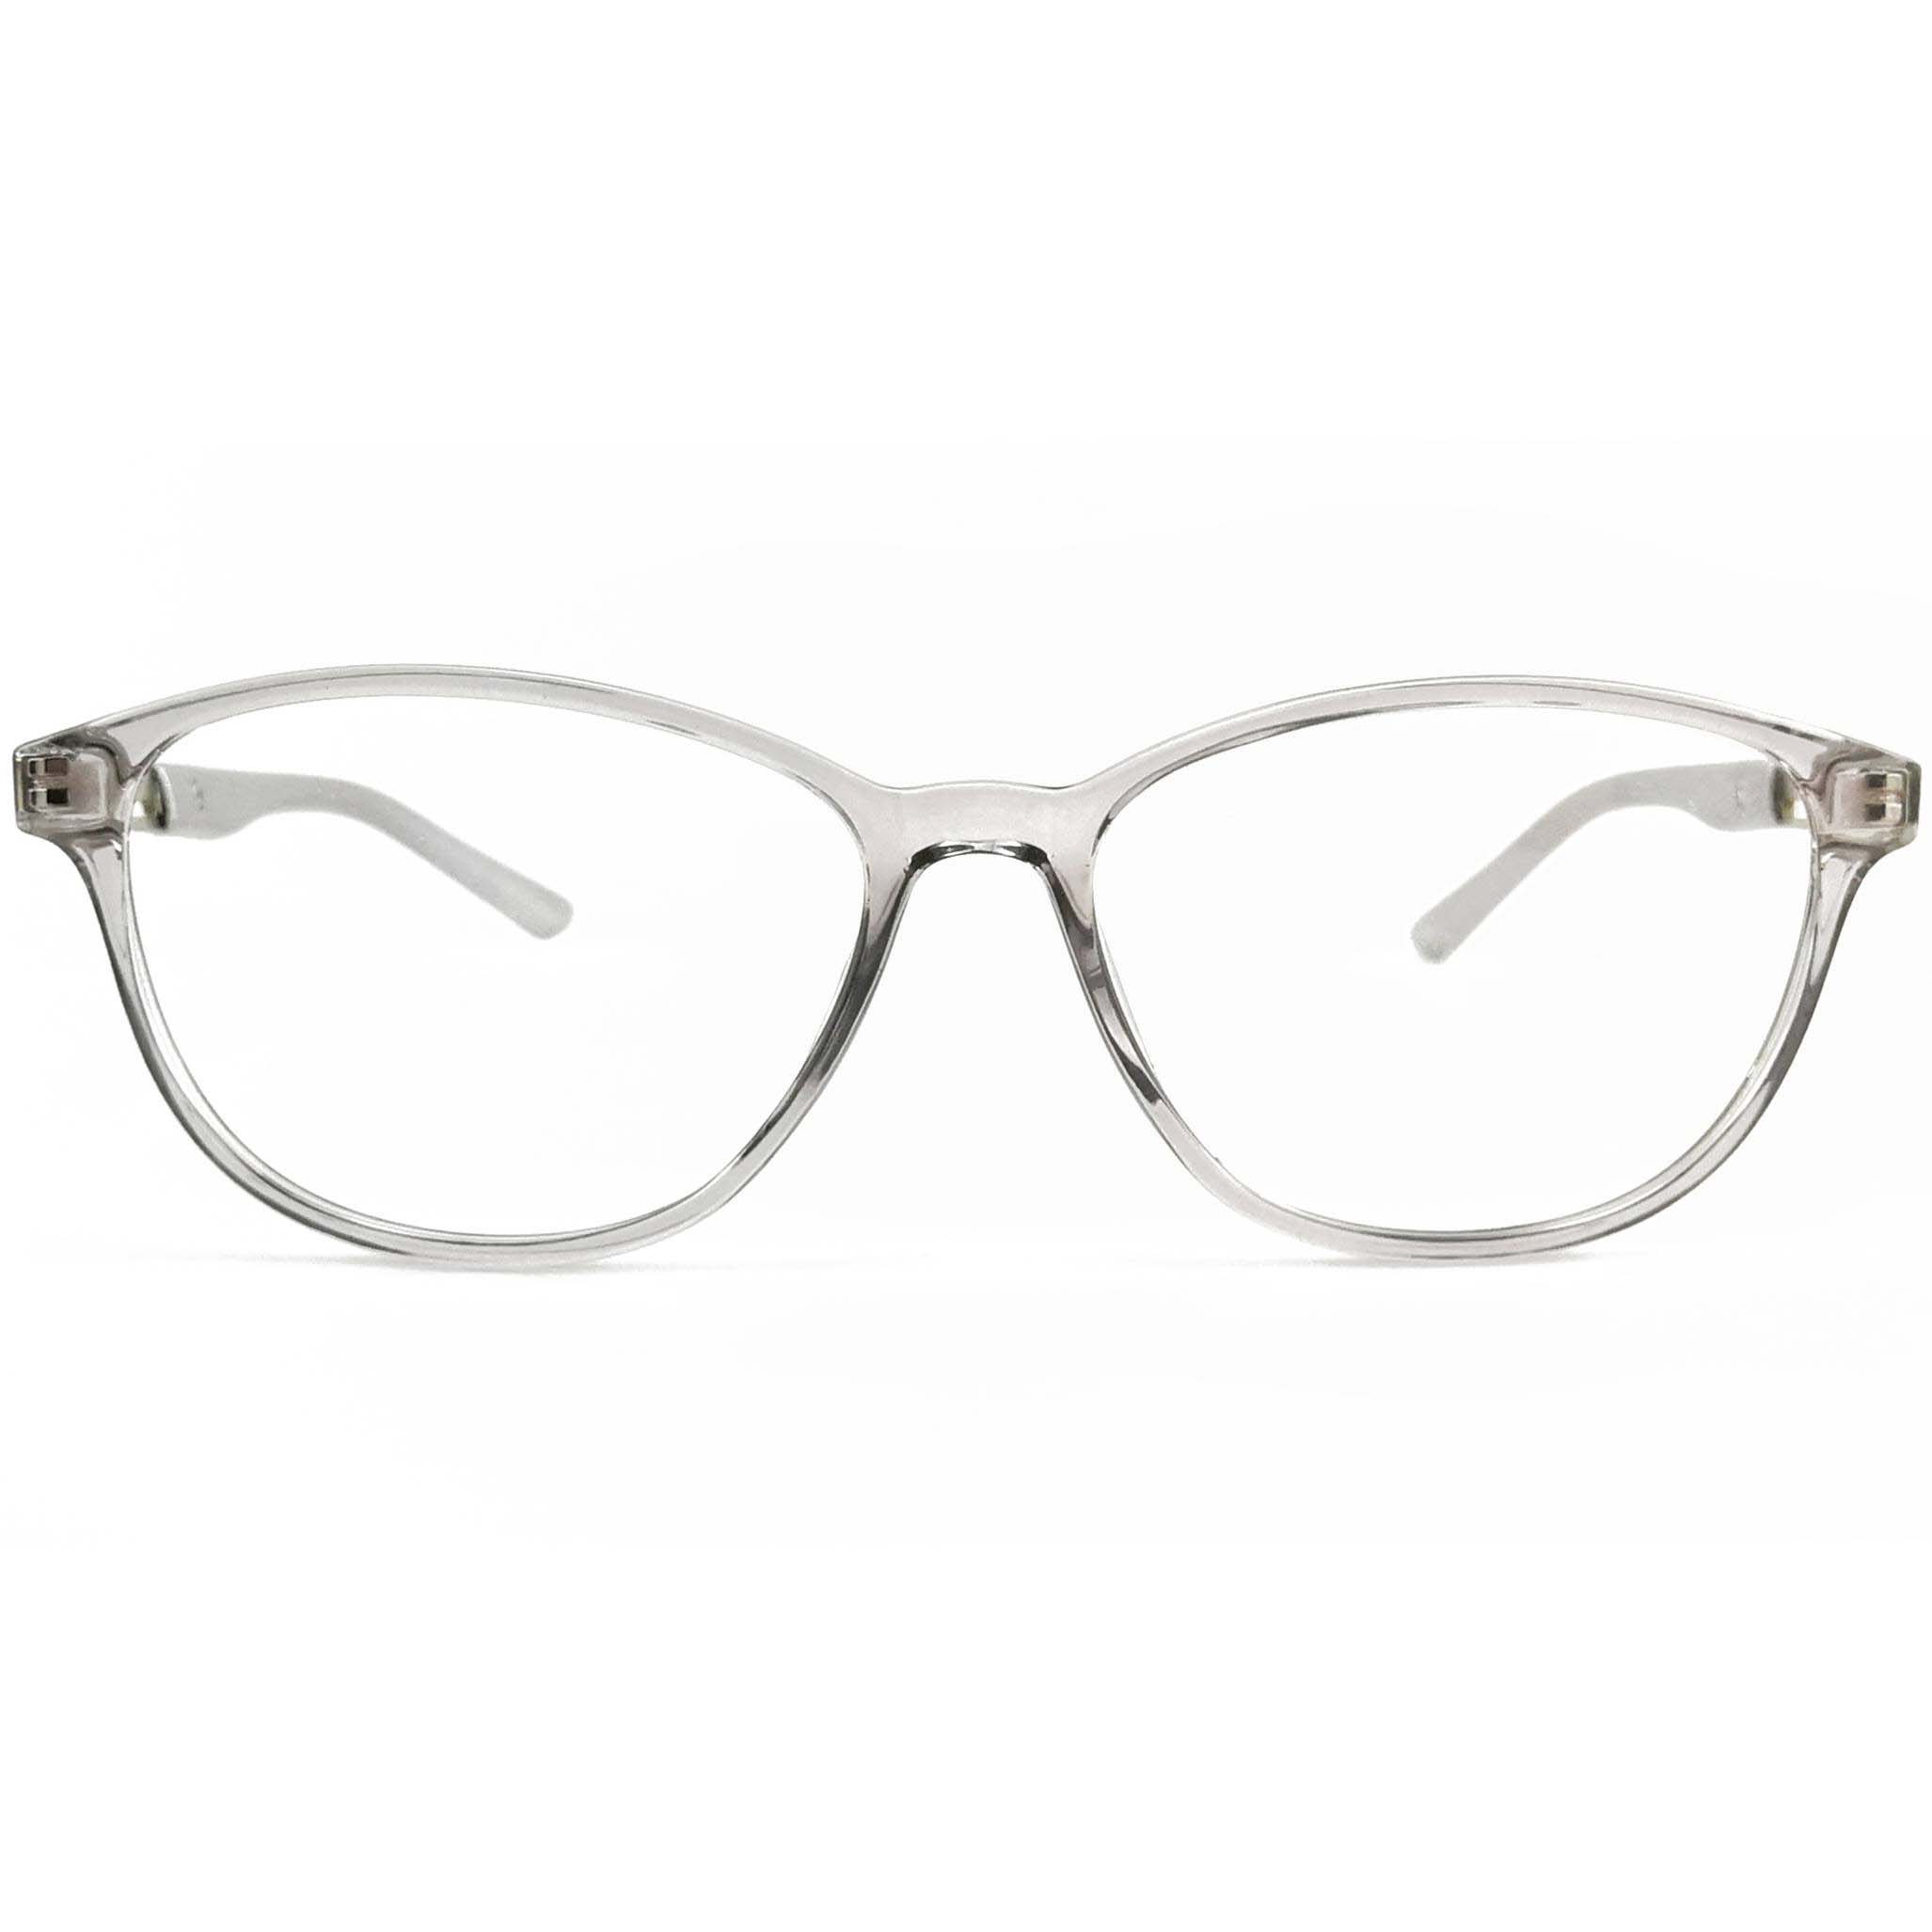 Eugenia optical glasses-1